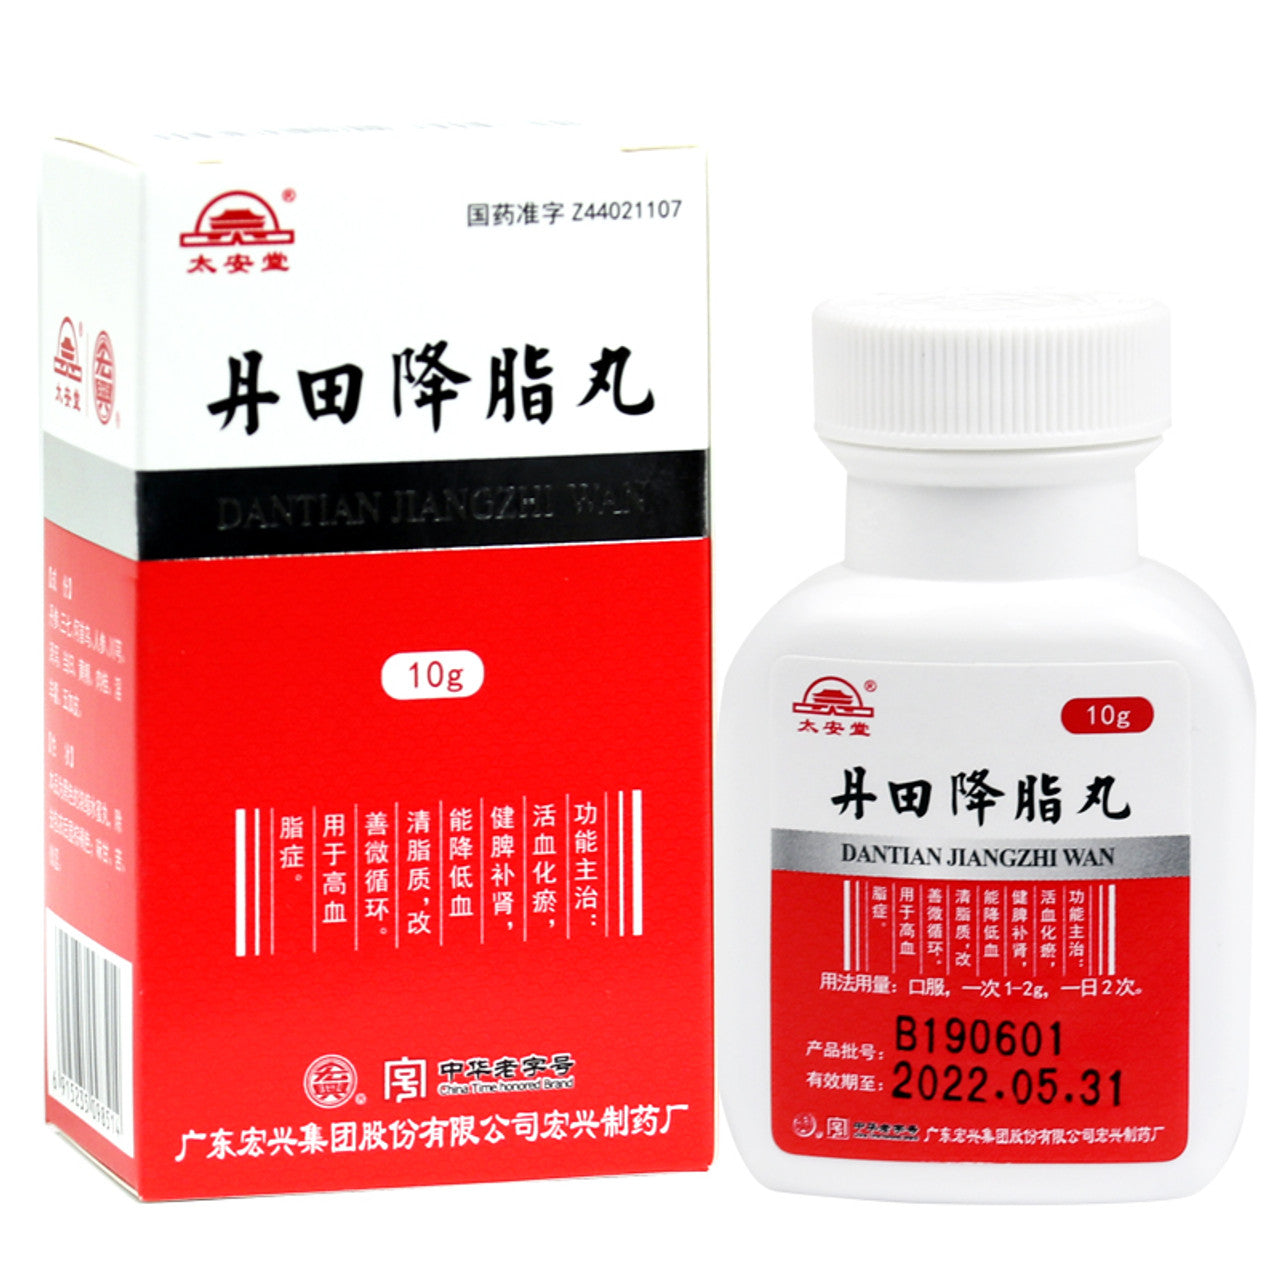 (10g*5 boxes/lot). Dantian Jiangzhi Wan or Dantian Jiangzhi Pills for Hyperlipidemia. Dan Tian Jiang Zhi Wan